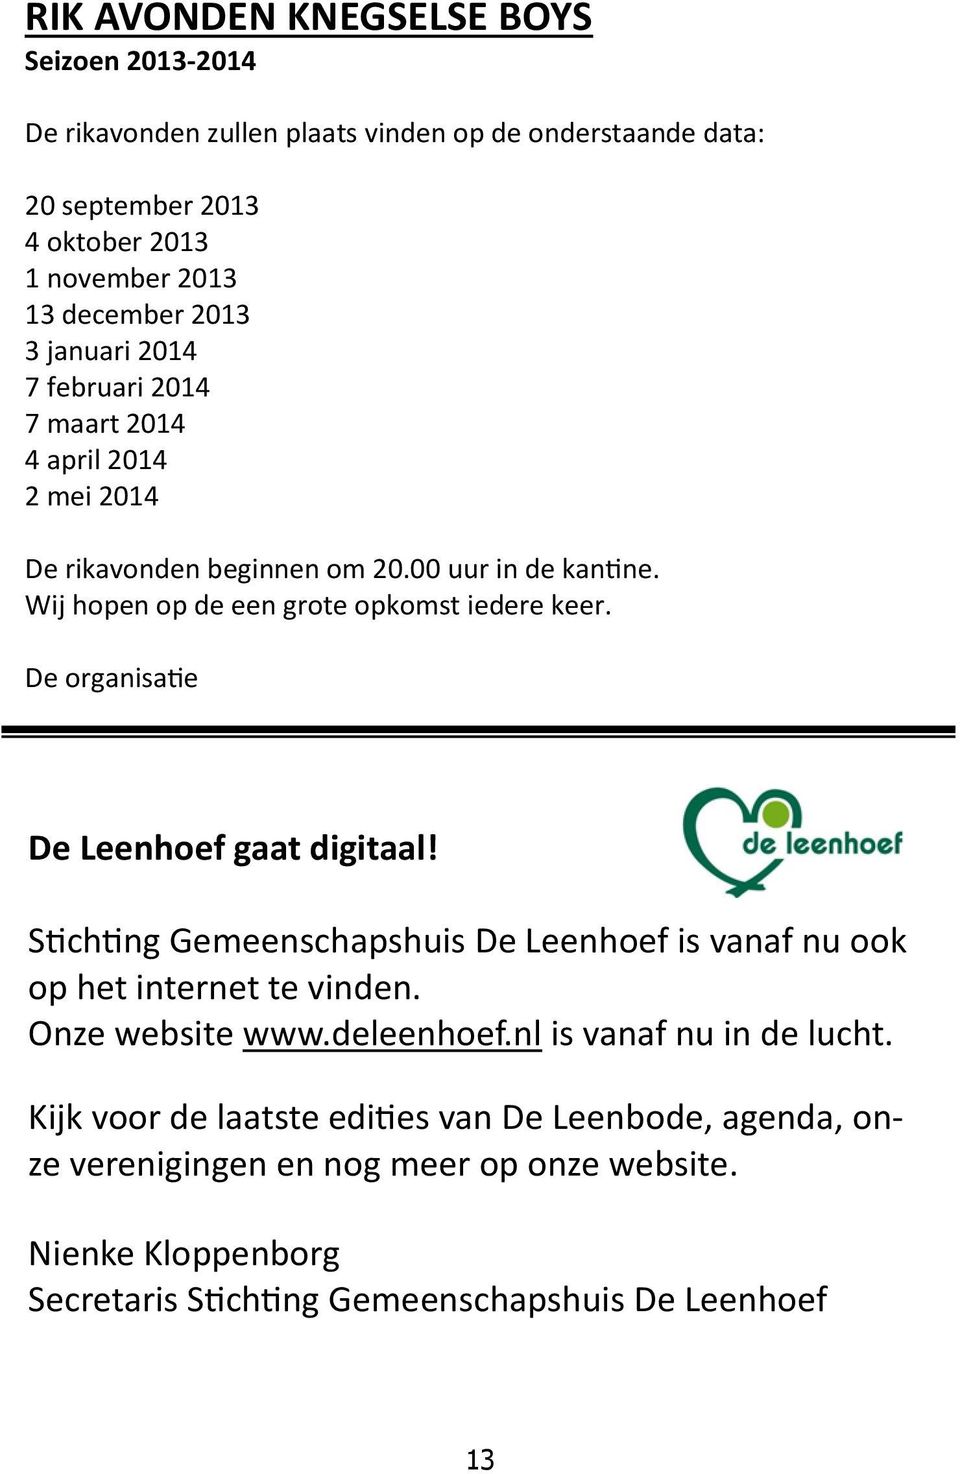 De organisatie De Leenhoef gaat digitaal! Stichting Gemeenschapshuis De Leenhoef is vanaf nu ook op het internet te vinden. Onze website www.deleenhoef.